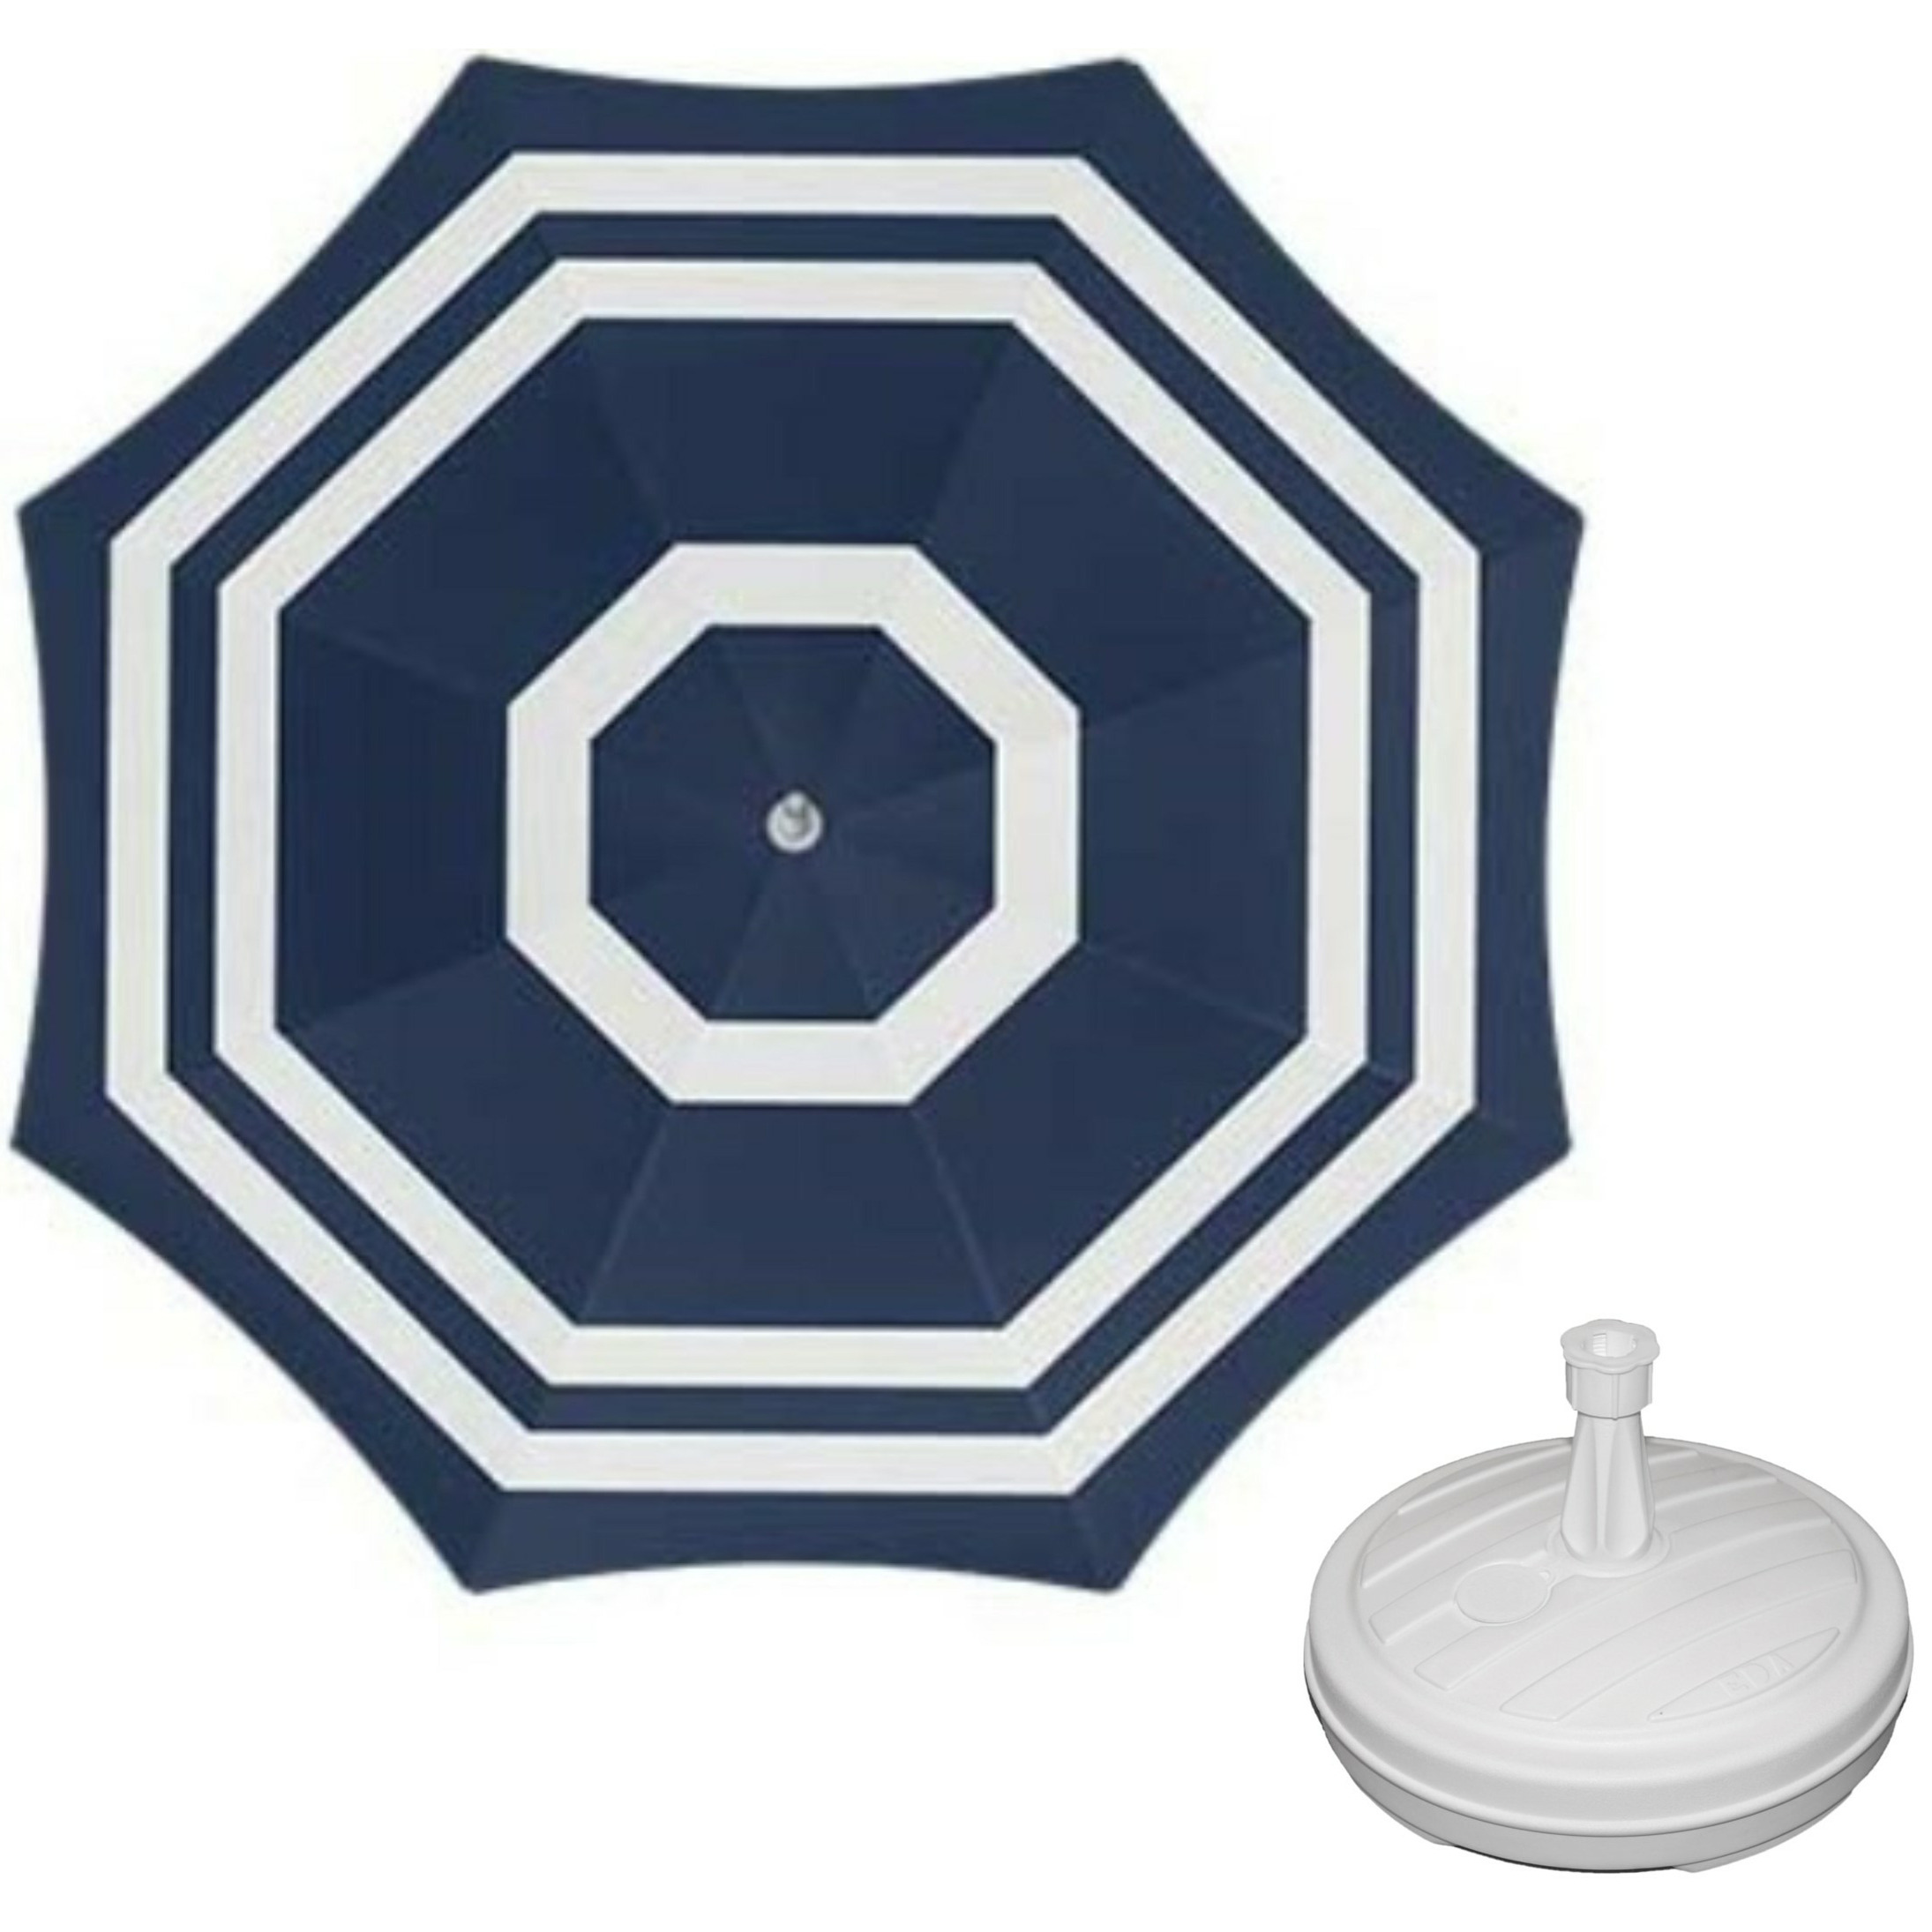 Parasol blauw-wit D140 cm incl. draagtas parasolvoet 42 cm